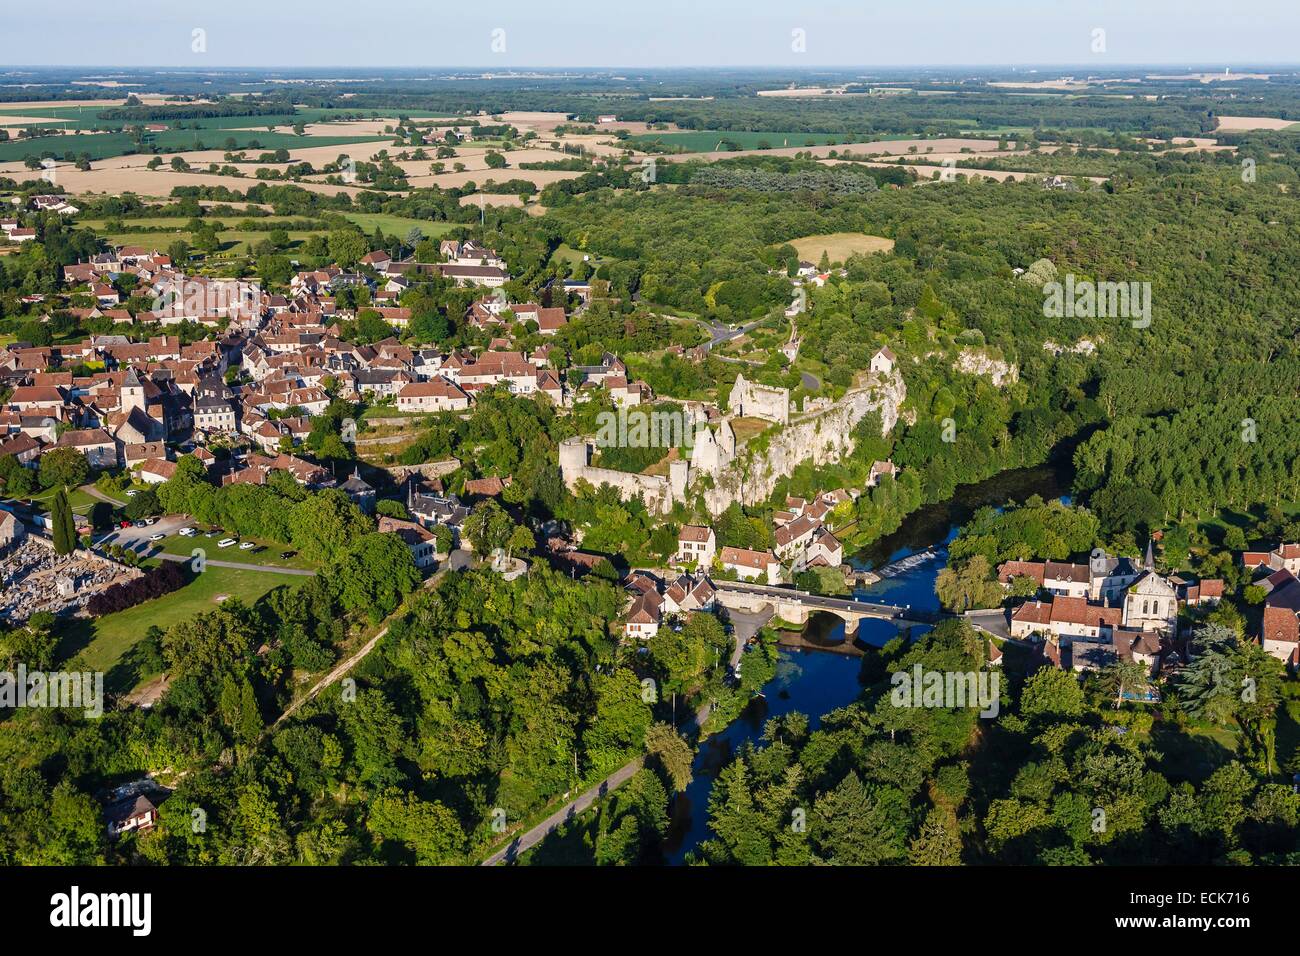 Francia, Vienne, angoli sur l'Anglin, etichettati Les Plus Beaux Villages de France (MoSaint bei villaggi di Francia), il borgo e il castello (vista aerea) Foto Stock